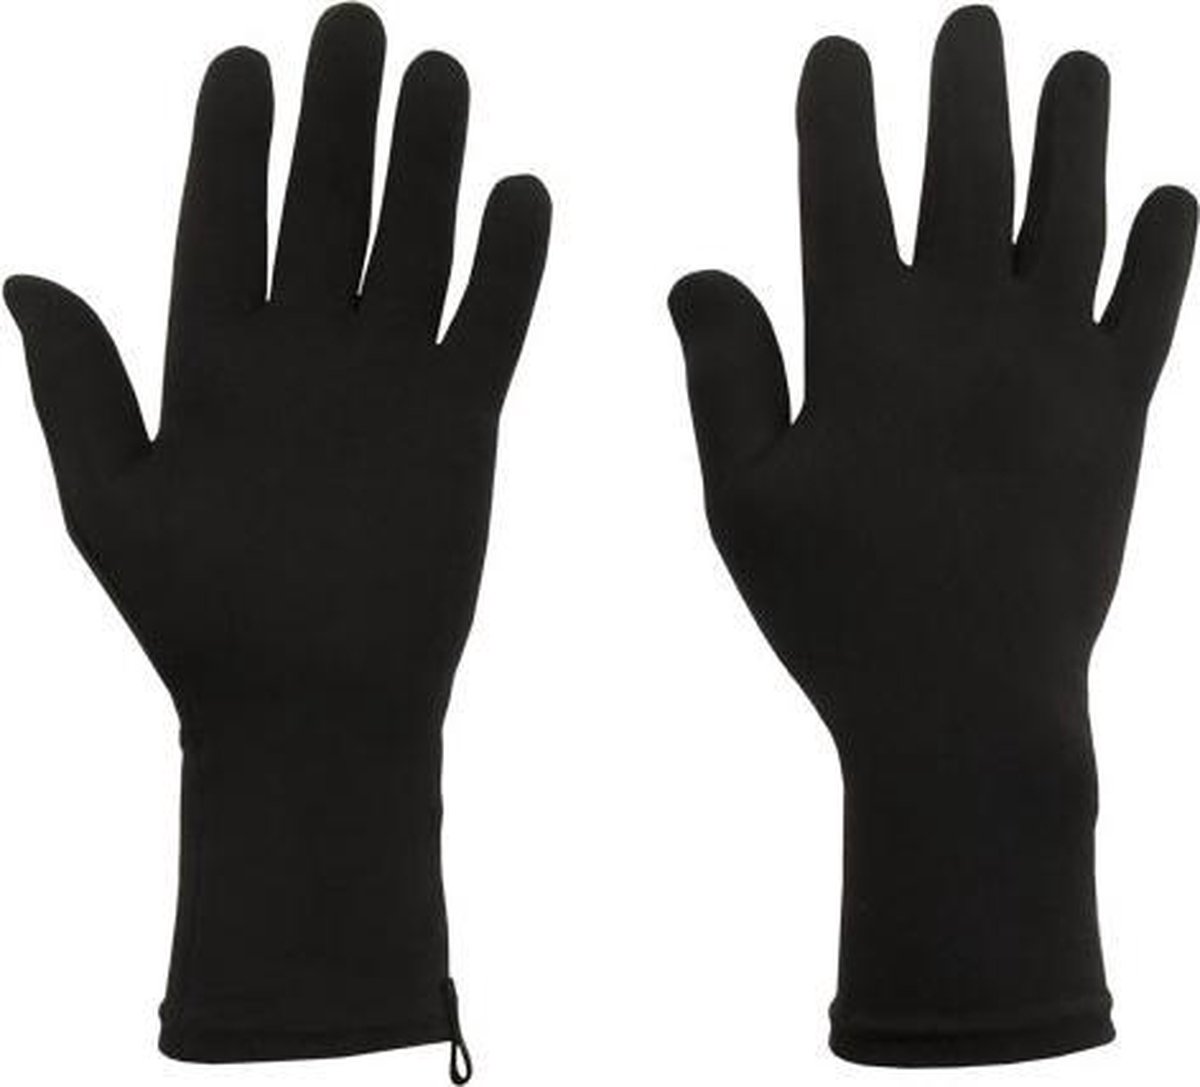 Protexgloves Original handschoenen zwart large - Tegen eczeem, zon gevoeligheid en andere chronische huid- en handaandoeningen